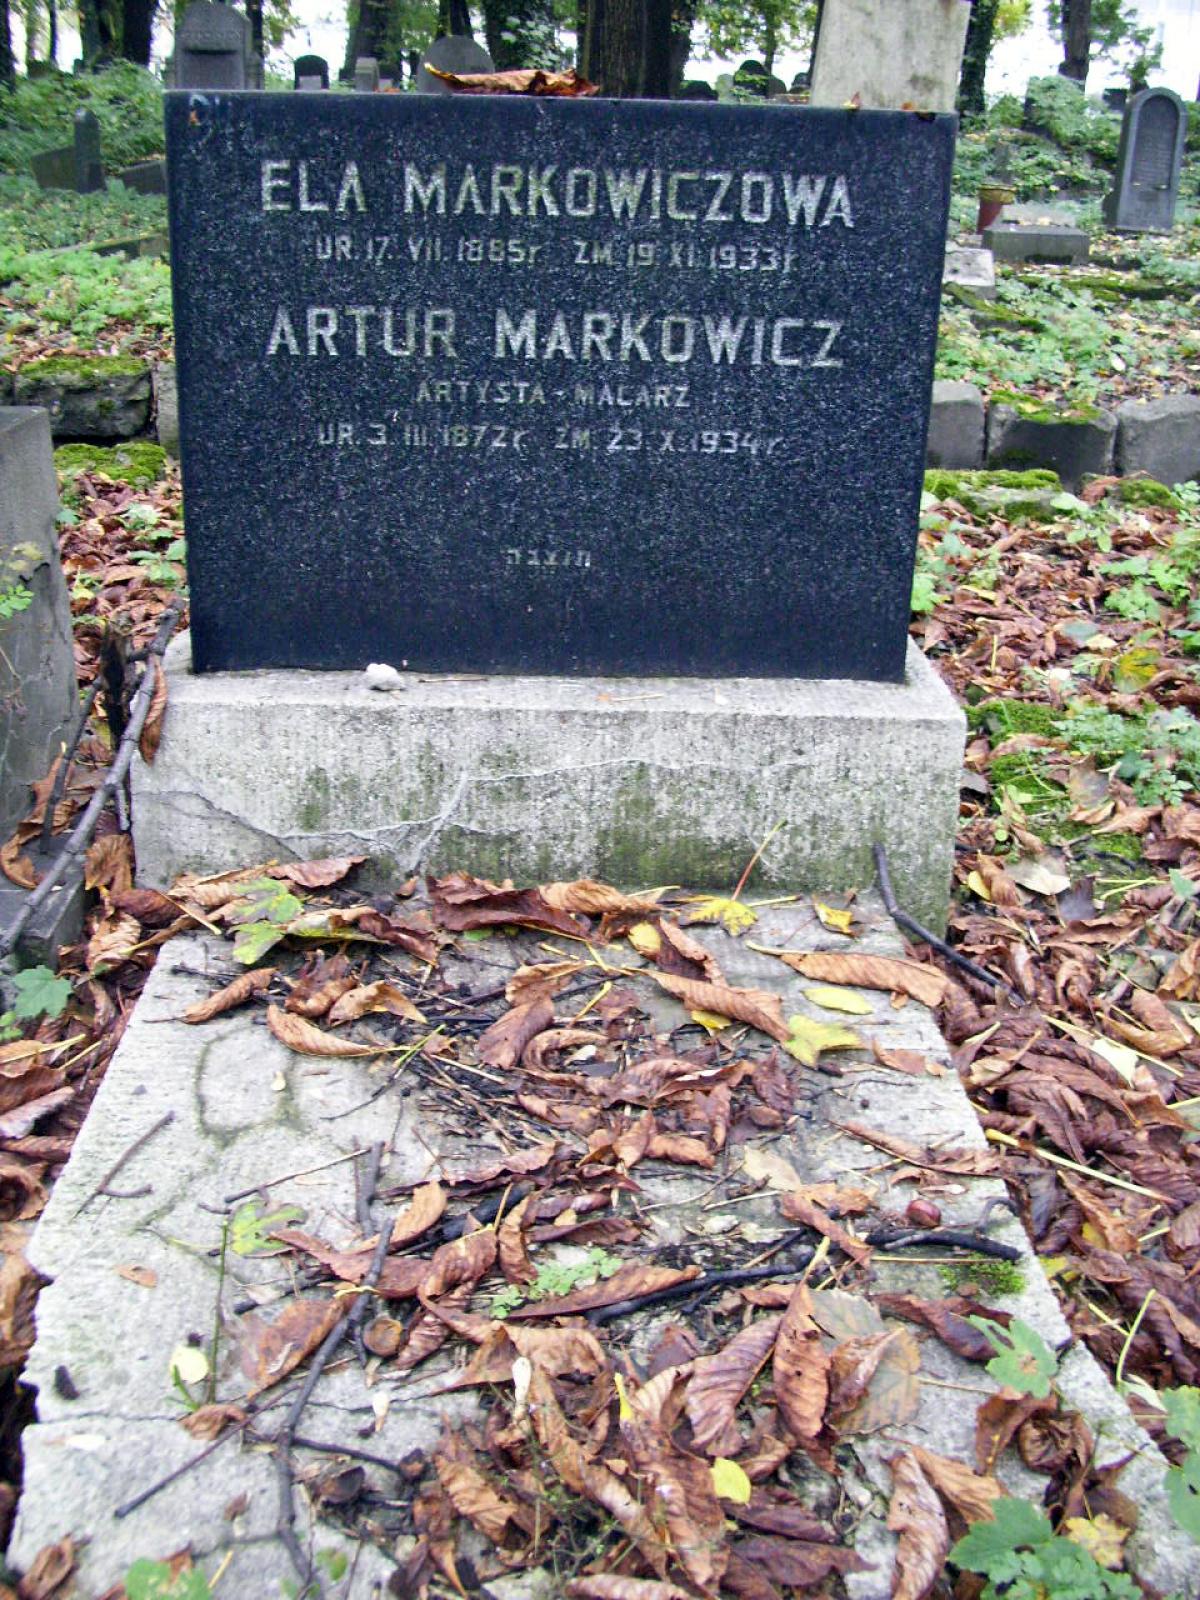 Wikipedia, Artur Markowicz, New Jewish Cemetery in Kraków, Self-published work